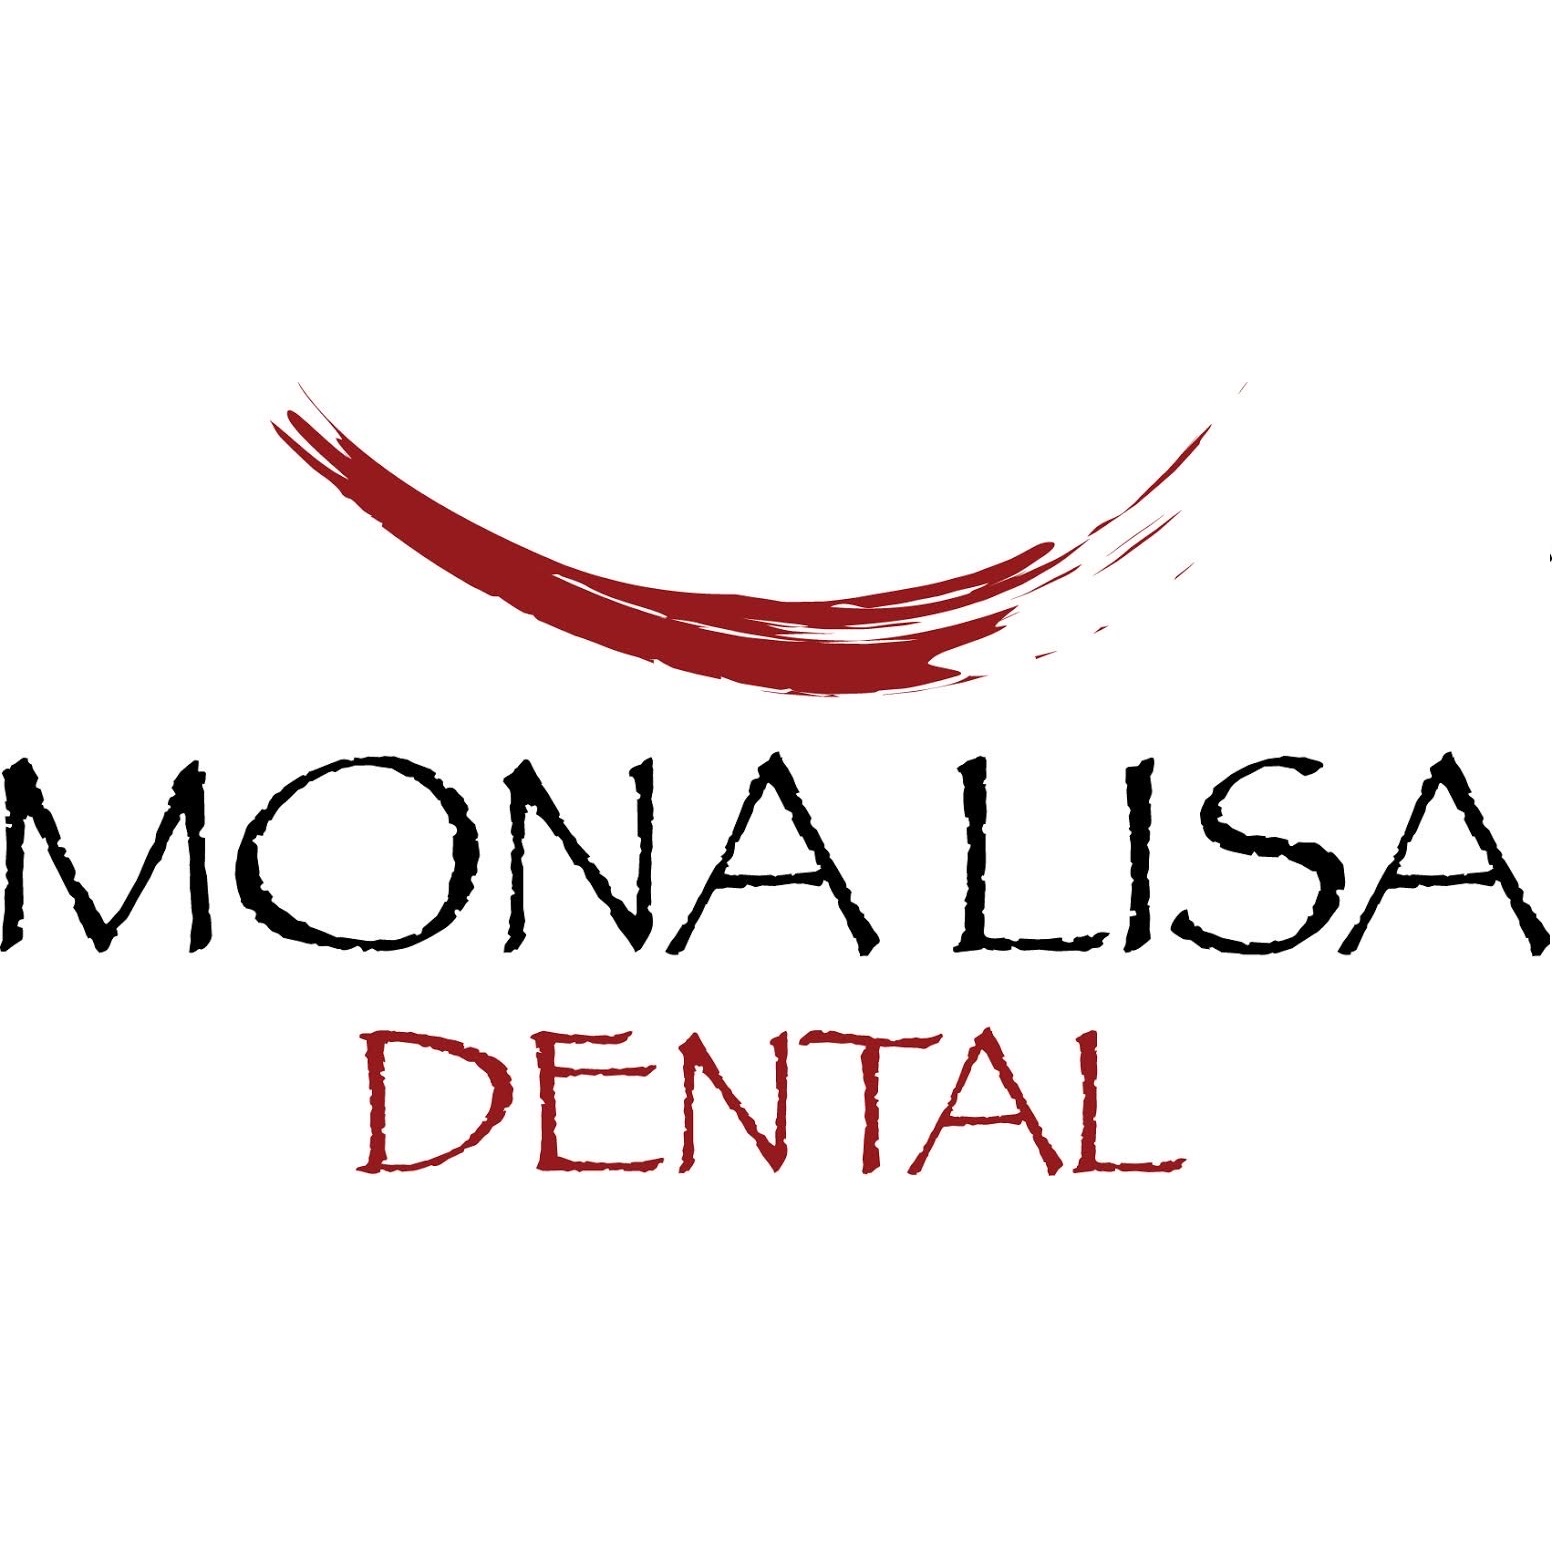 Mona Lisa Dental